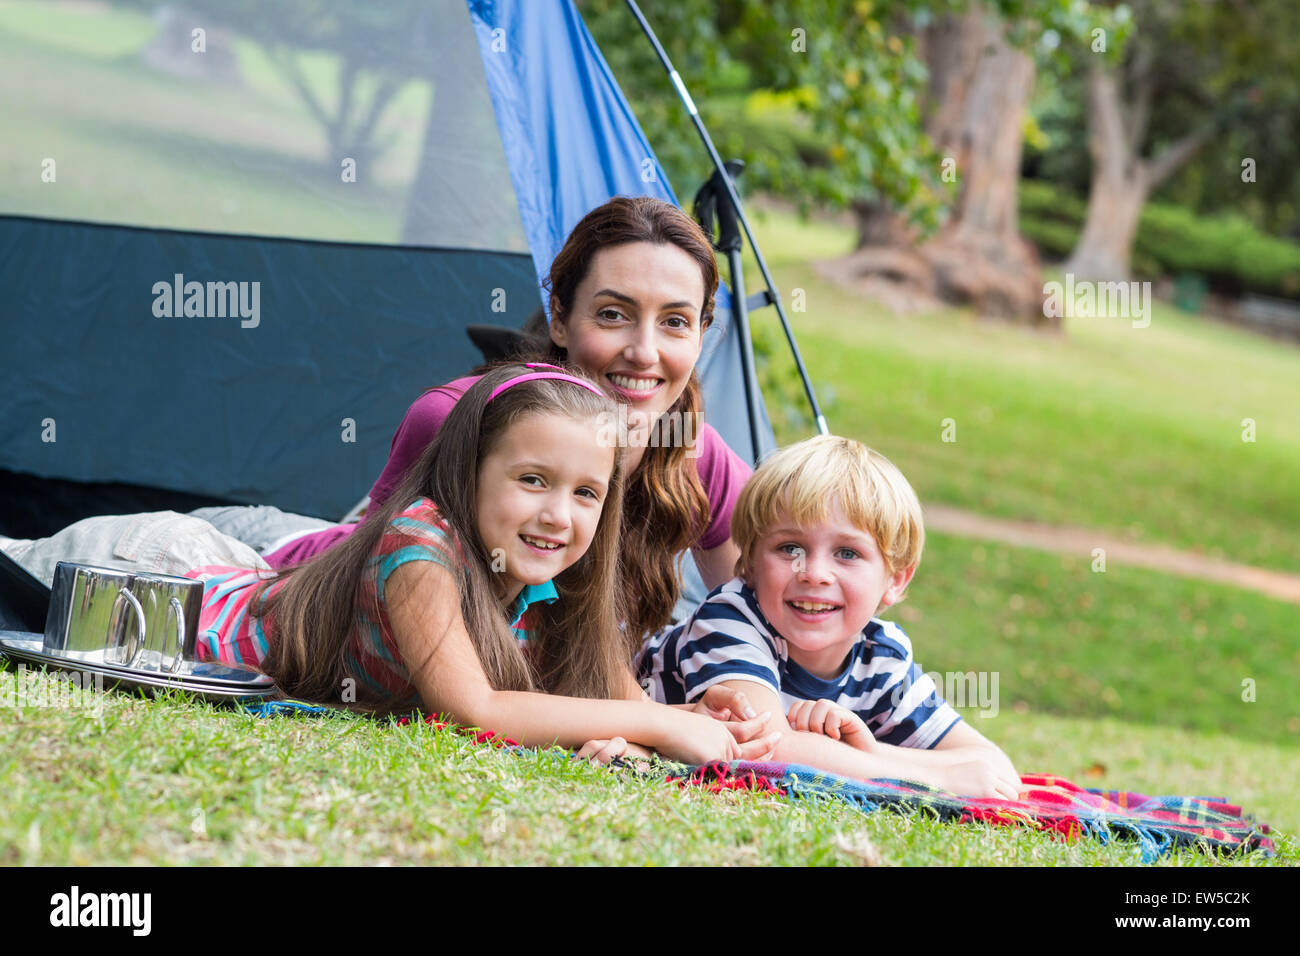 Madre e hijos se divierten en el parque Foto de stock